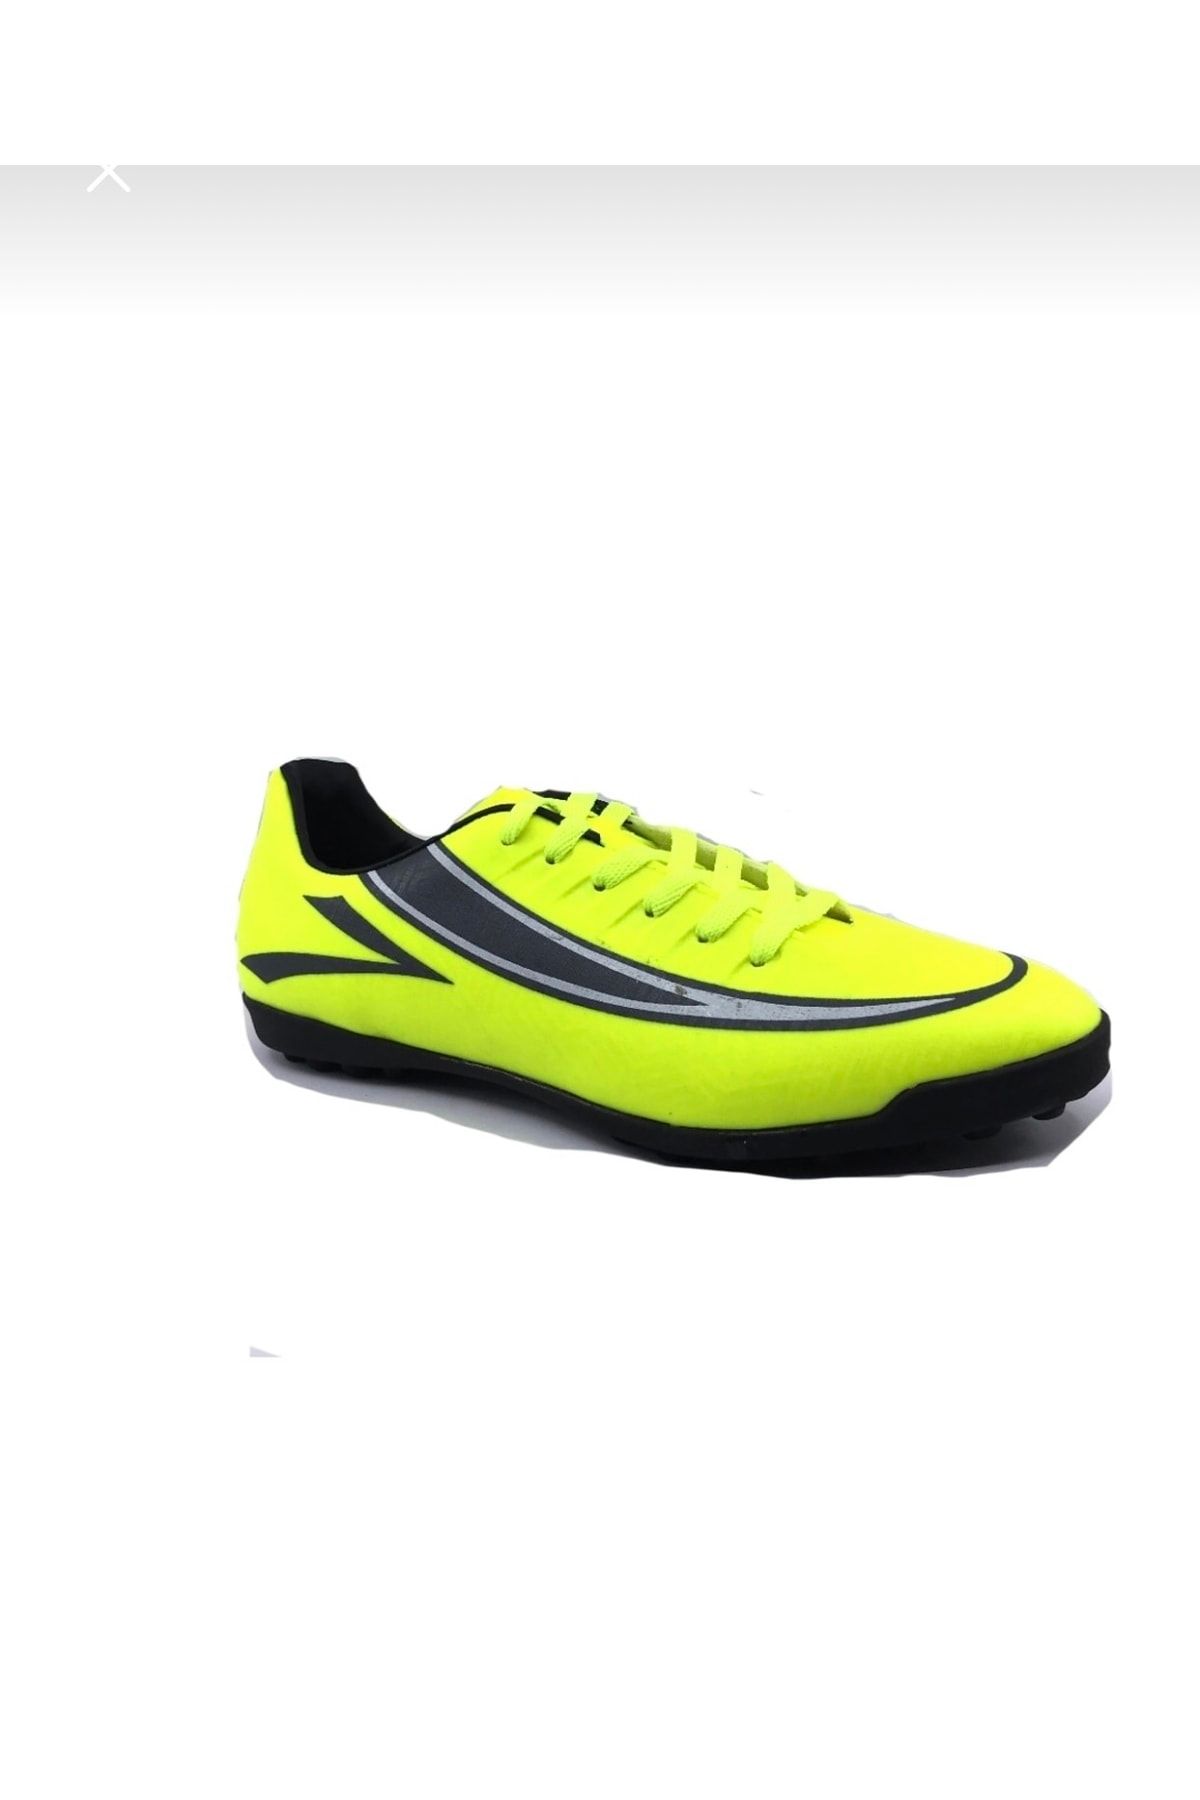 Lig Simena Unisex Sarı Halı Saha Çim Spor Ayakkabı 39-45